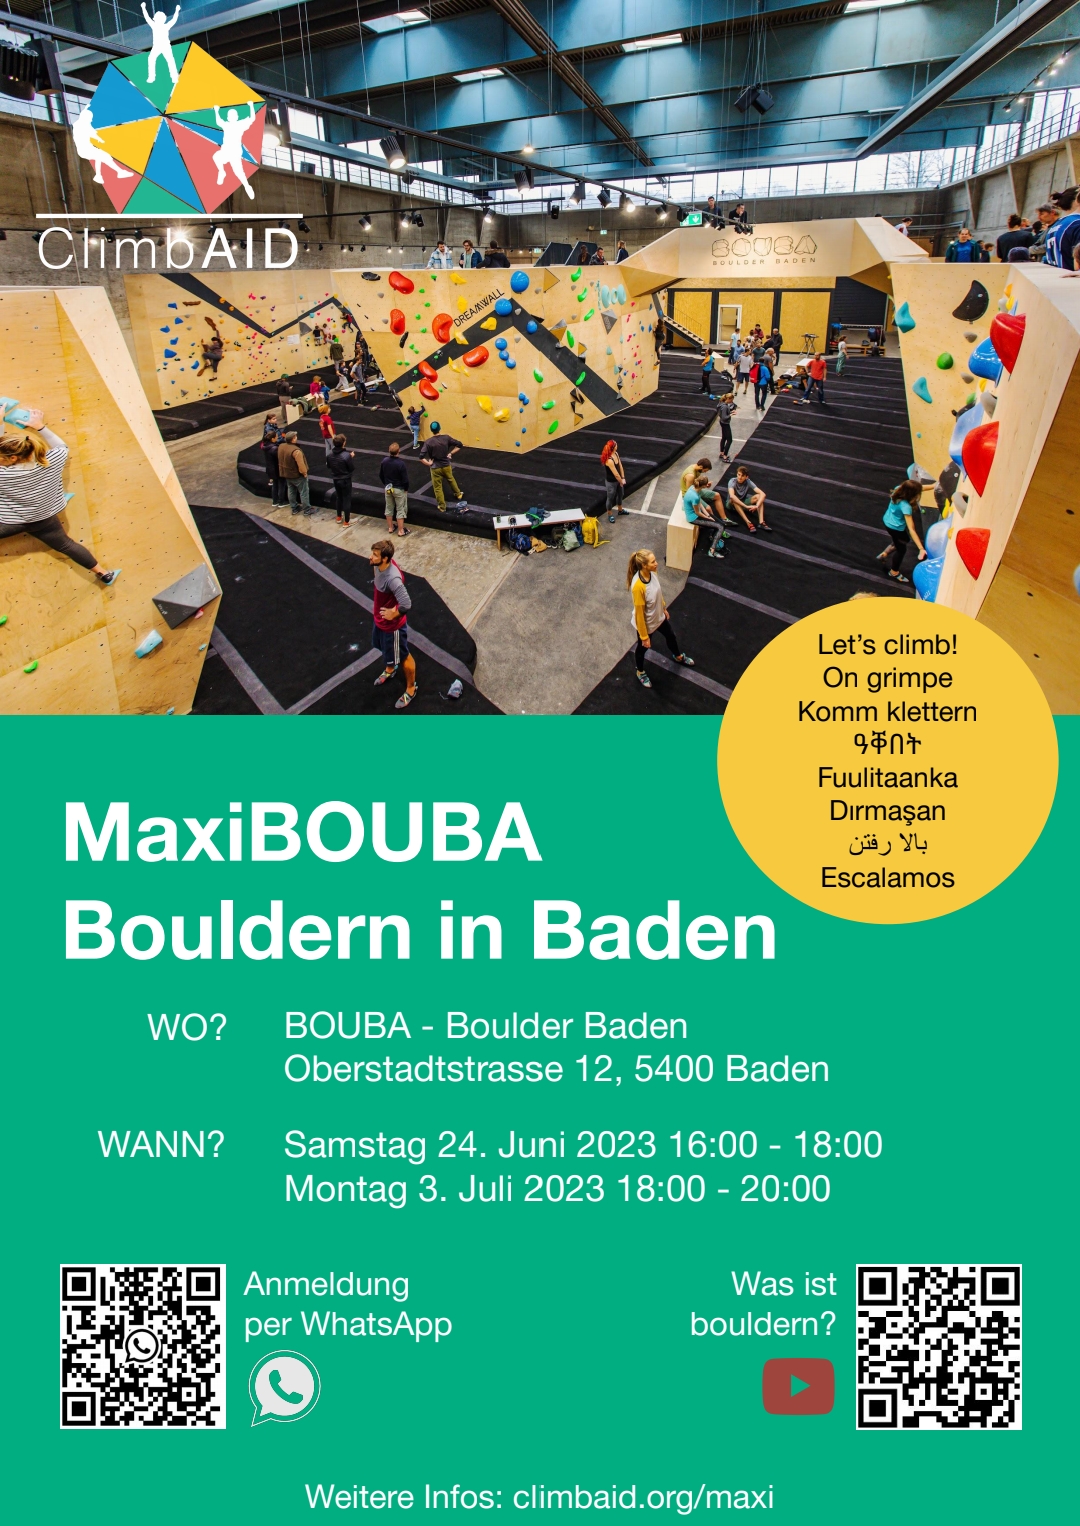 MaxiBouba_Bouldern_in_Badenjpg